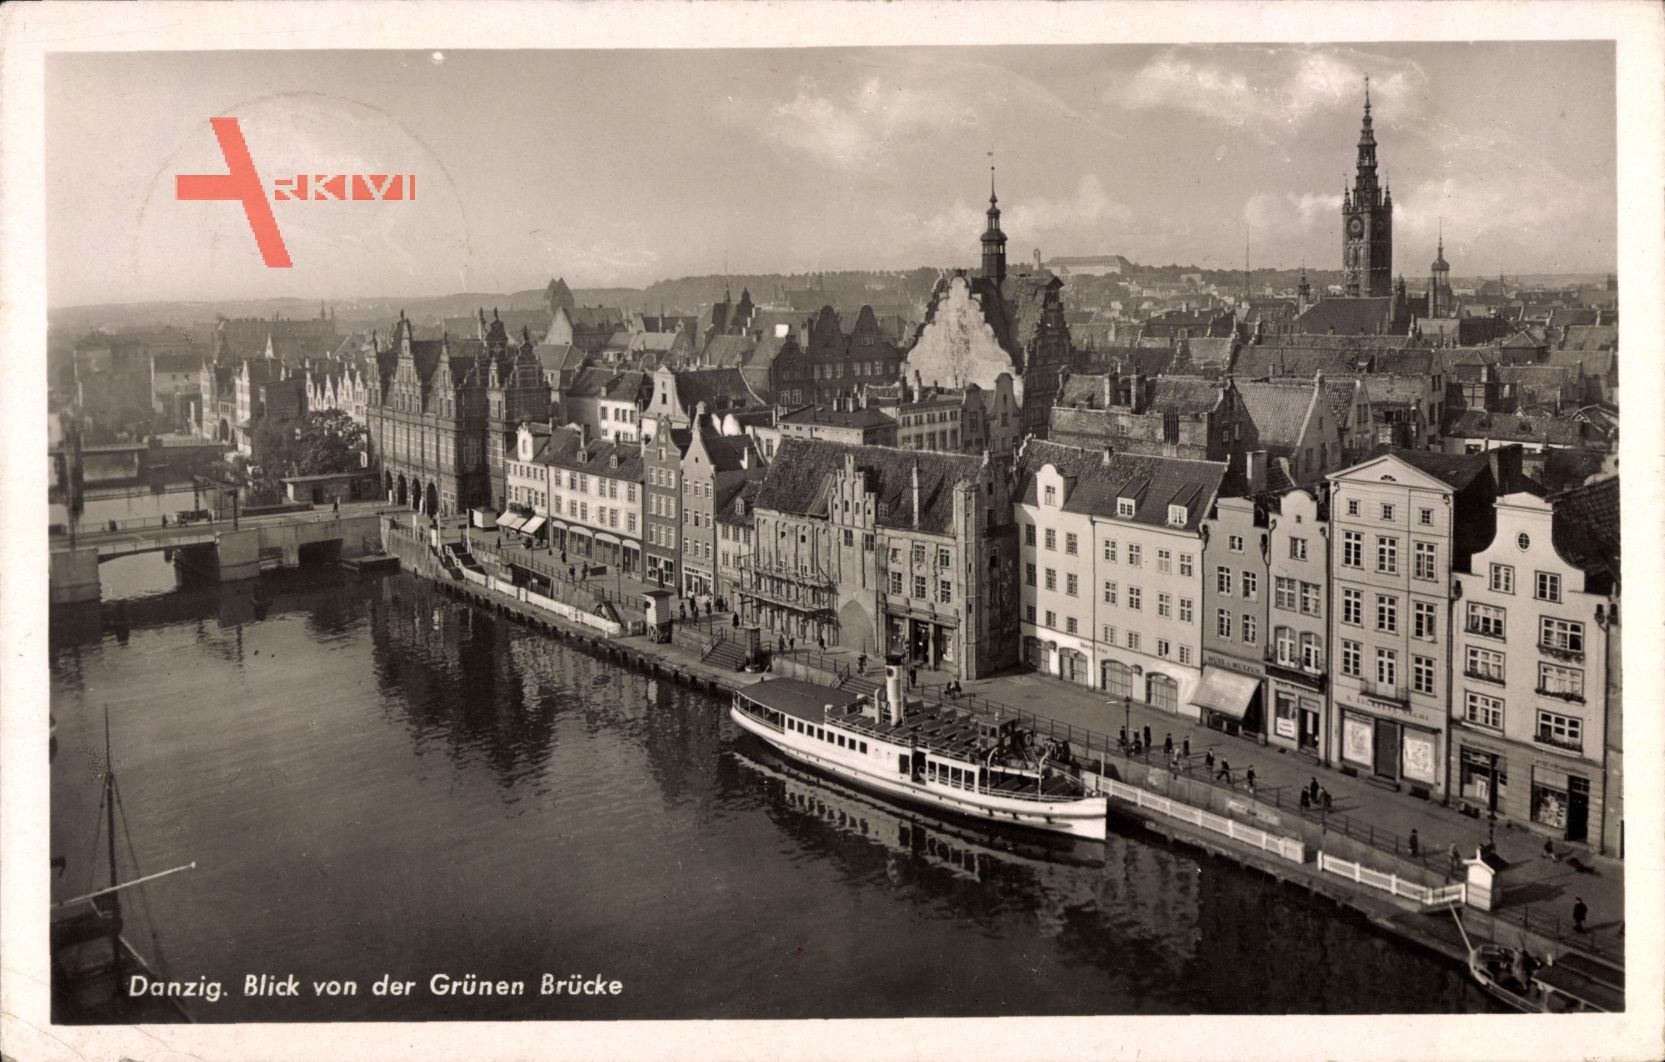 Gdańsk Danzig, Blick von der grünen Brücke, Dampfschiff, Kirchturm